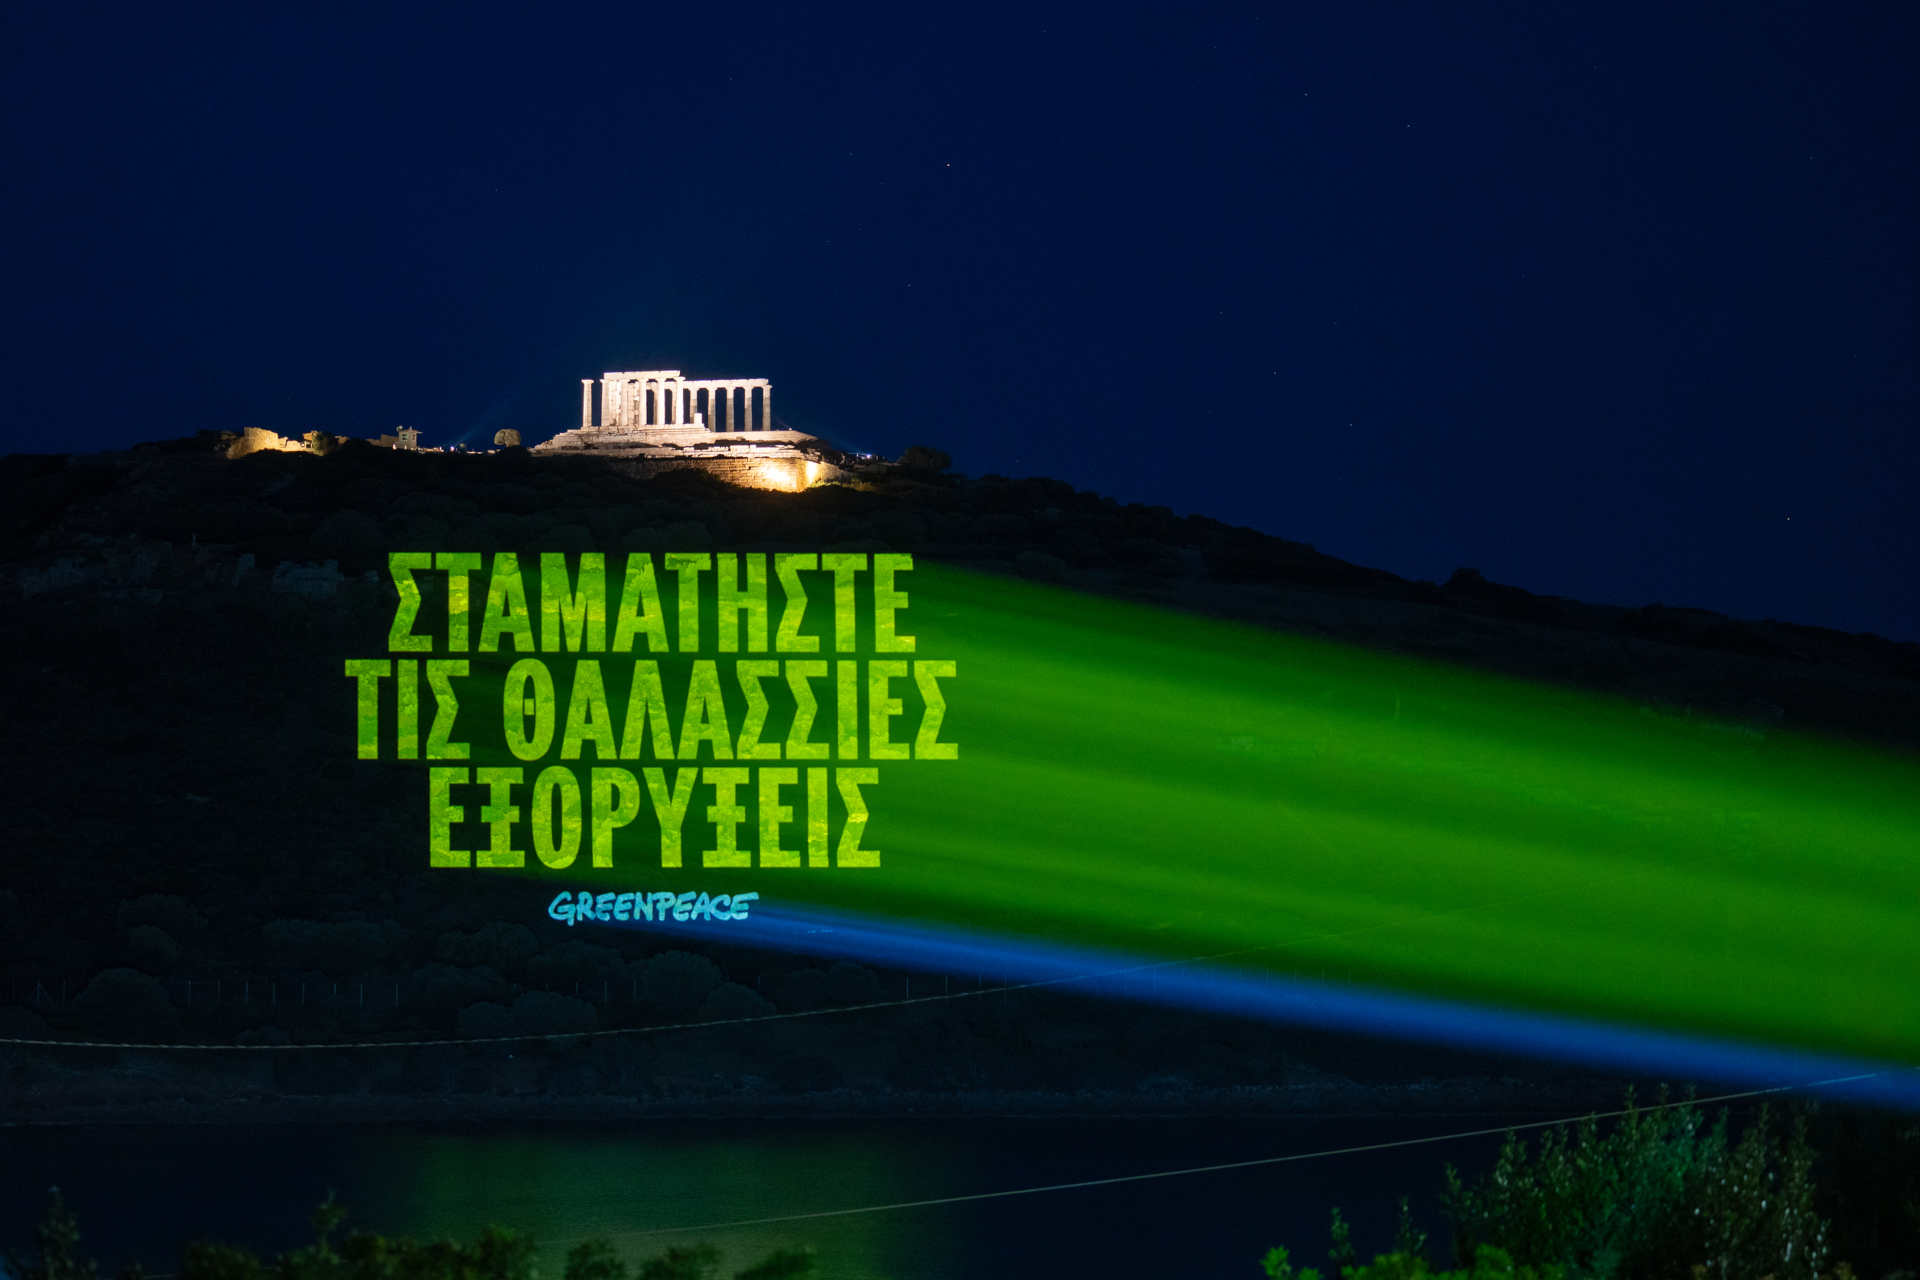 Grekland: meddelandet på grekiska som lyder